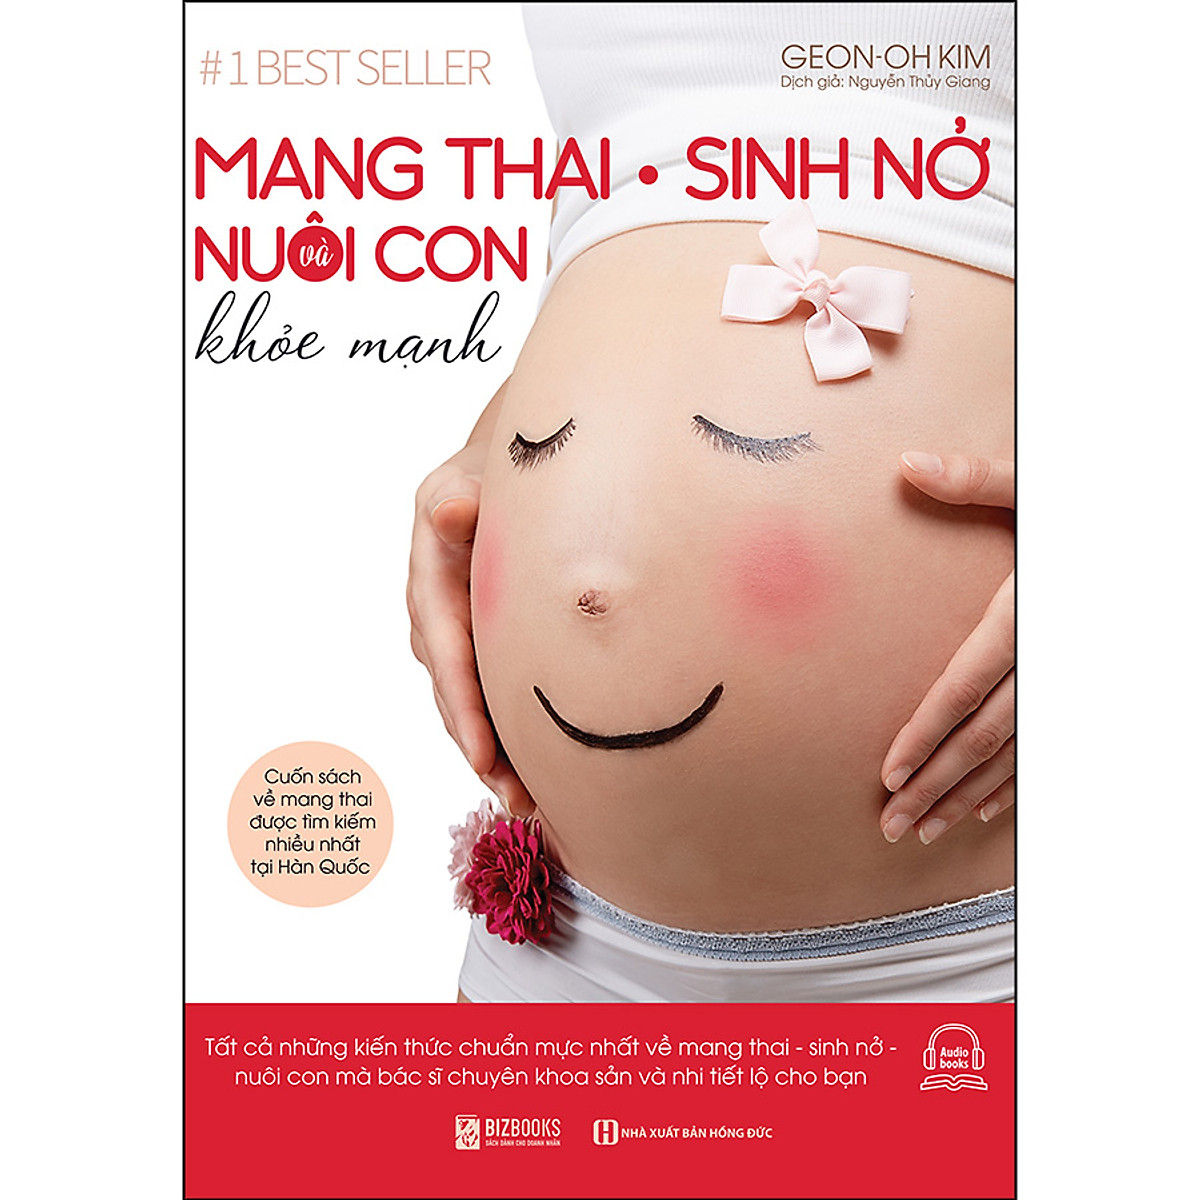 Mang Thai Sinh Nở Và Nuôi Con Khỏe Mạnh  Cuốn Sách Về Mang Thai Được Tìm Kiếm Nhiều Nhất Tại Hàn Quốc